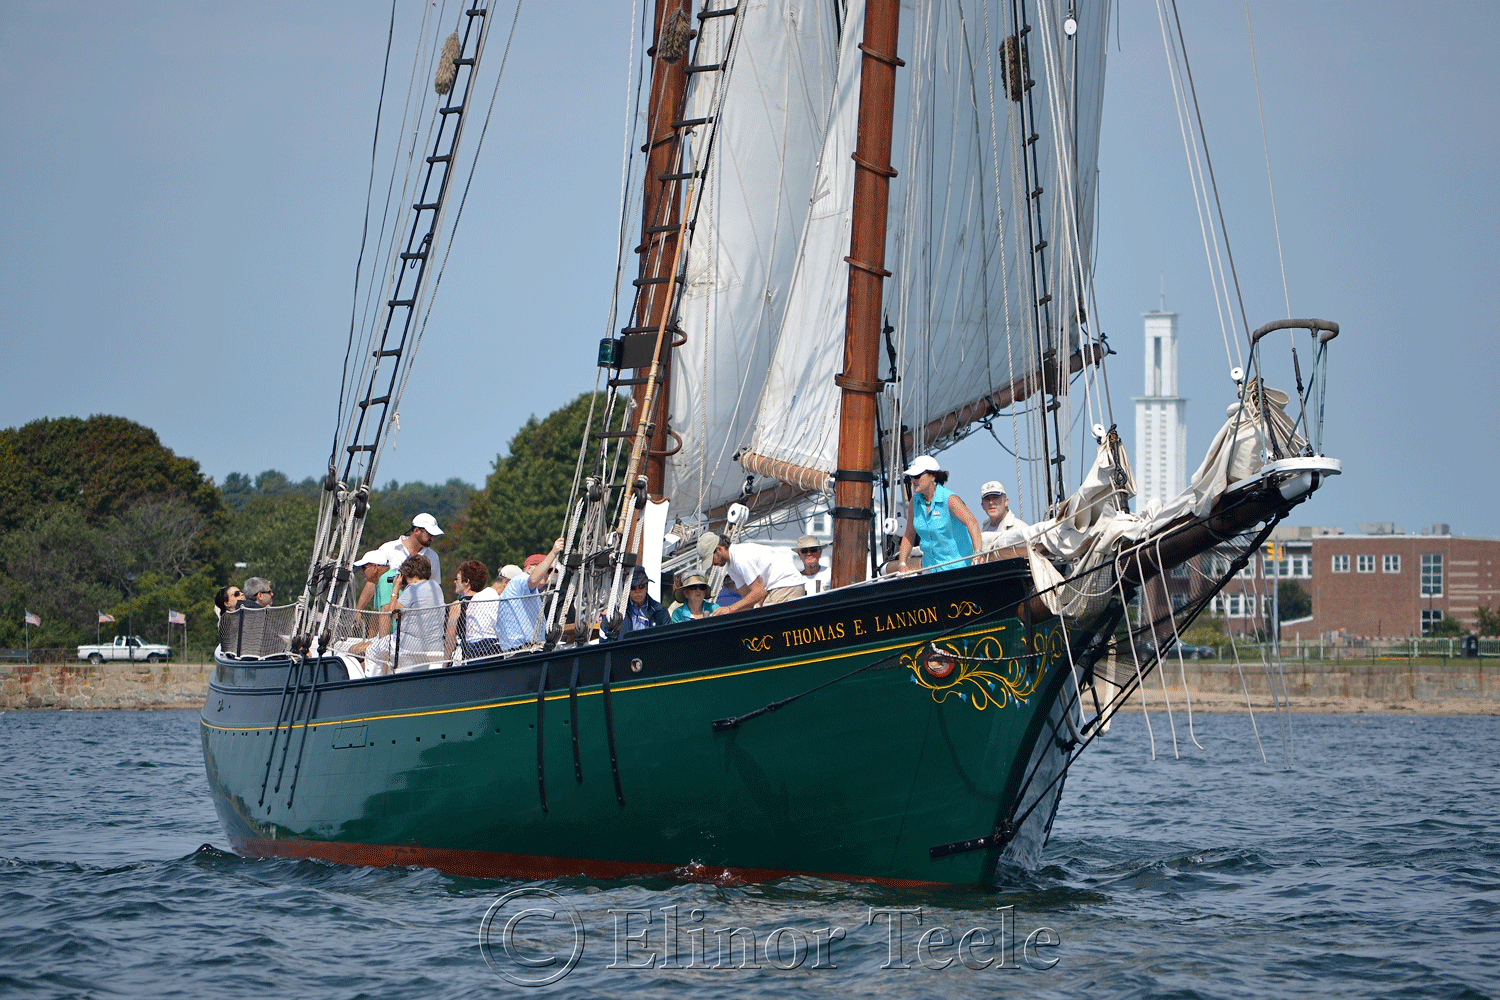 Schooner Thomas E. Lannon in Gloucester Harbor